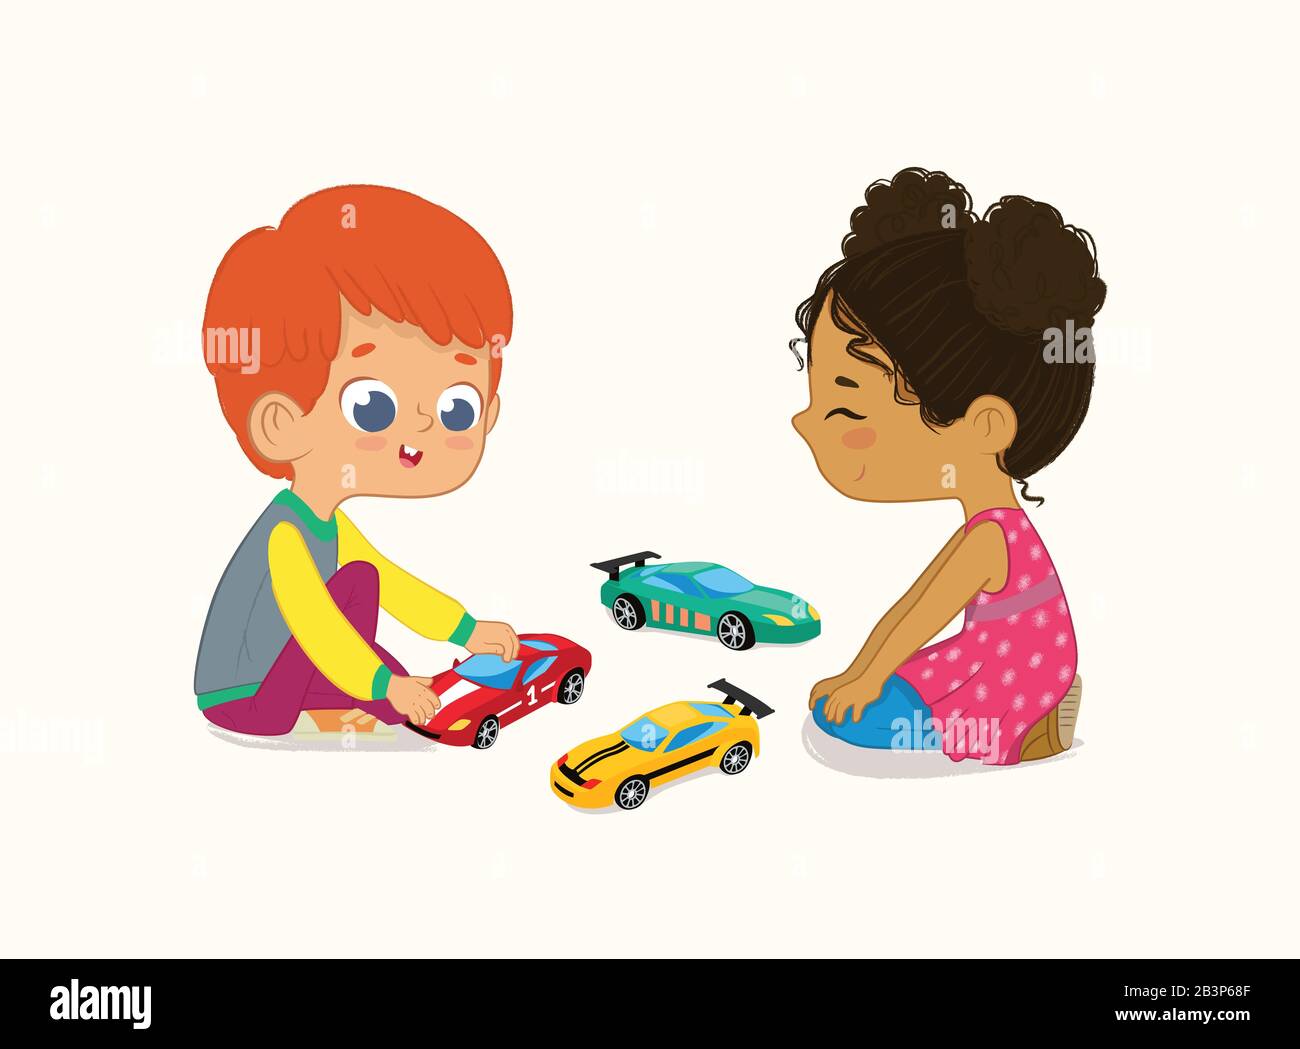 Illustration De Mignon garçon et fille Jouant avec Leurs jouets Cars. Un garçon de cheveux rouge montre et partage ses voitures de jouet à Son ami afro-américain Illustration de Vecteur